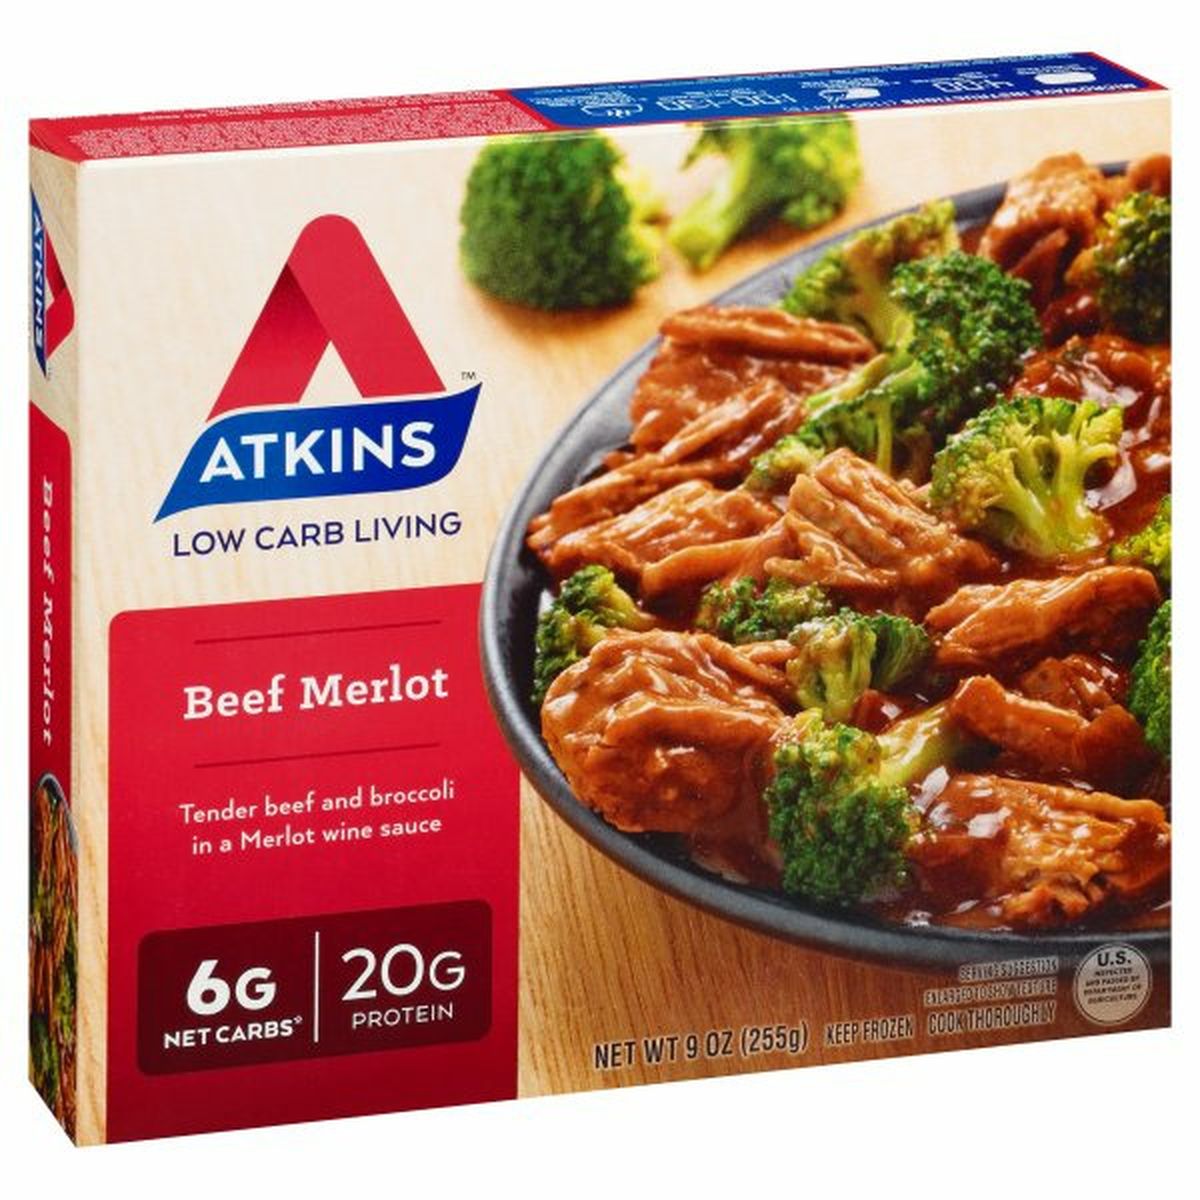 Calories in Atkins Beef Merlot